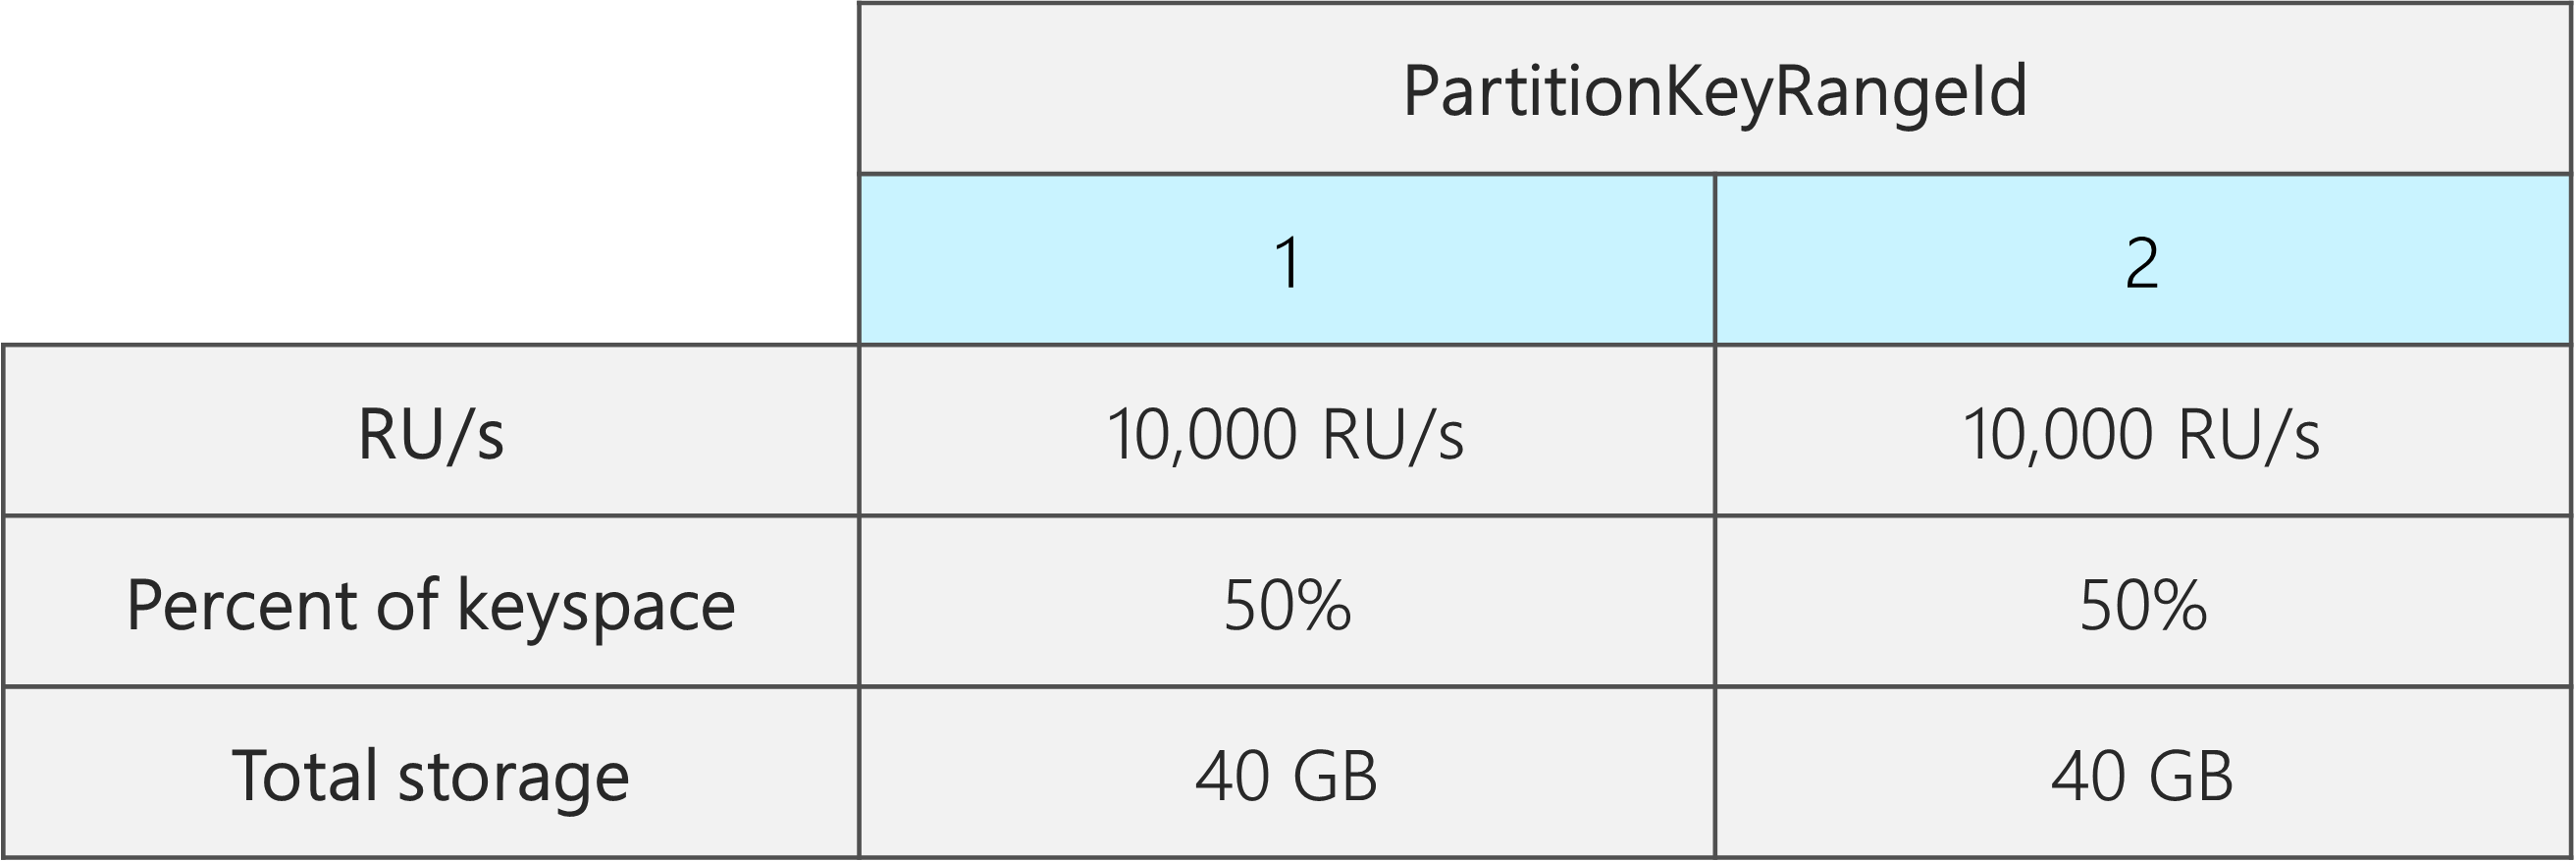 Két PartitionKeyRangeId, egyenként 10 000 RU/s, 40 GB és a teljes kulcstér 50%-a